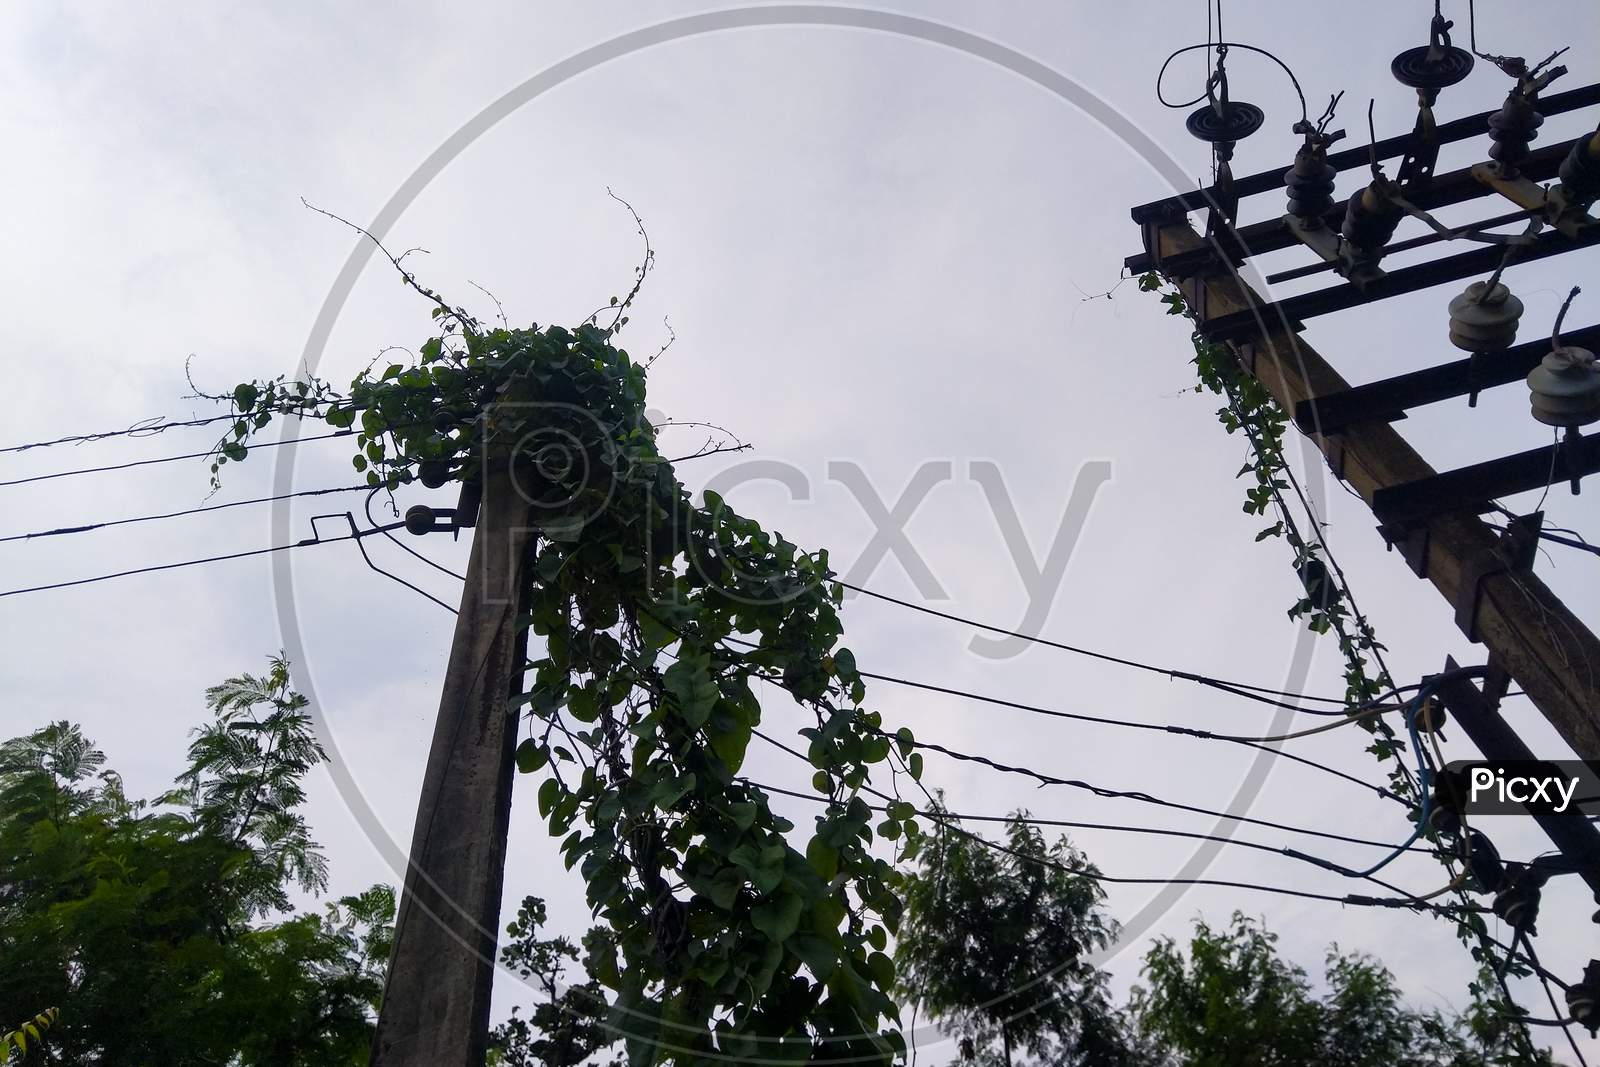 Plants & Vine On Electric Pole Selective Focus